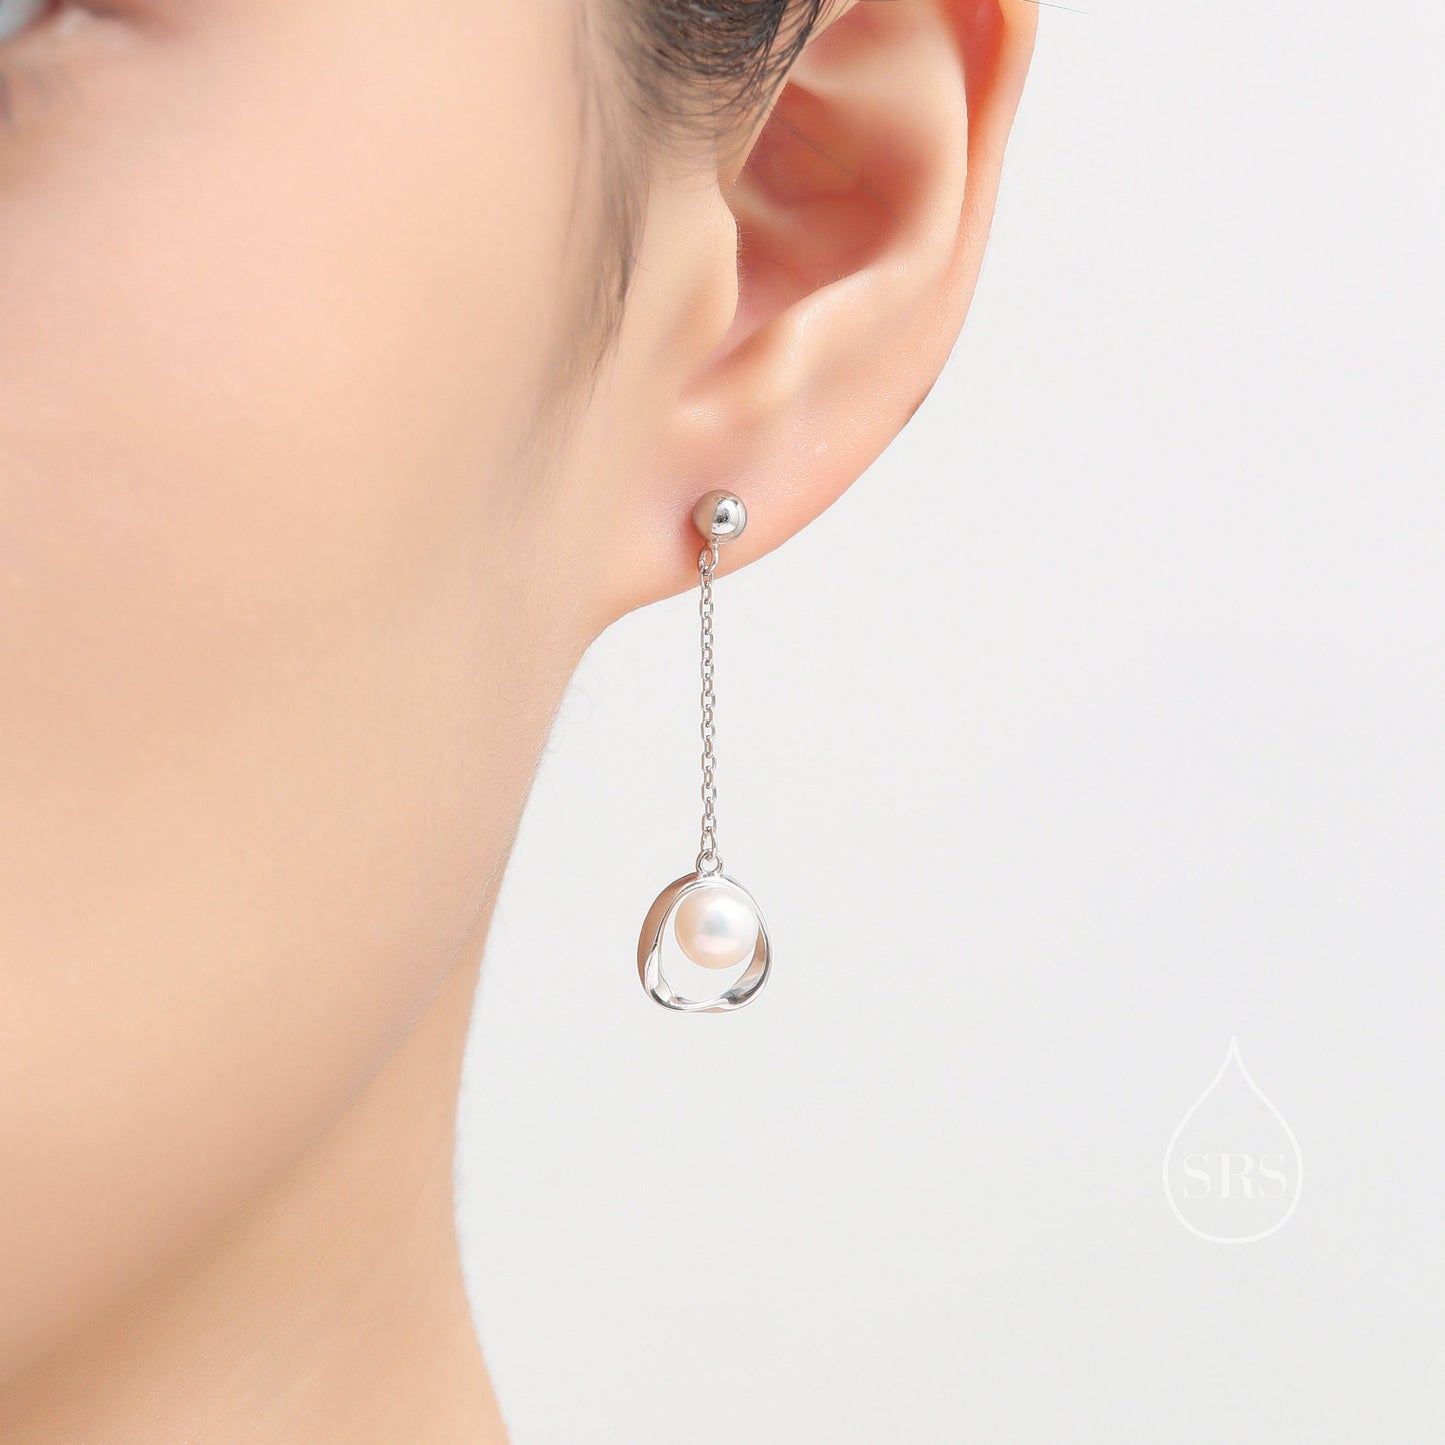 Genuine Freshwater Pearl and Mobius Circle Long Drop Earrings in Sterling Silver, Delicate Keshi Pearl Halo Earrings, Genuine Pearls